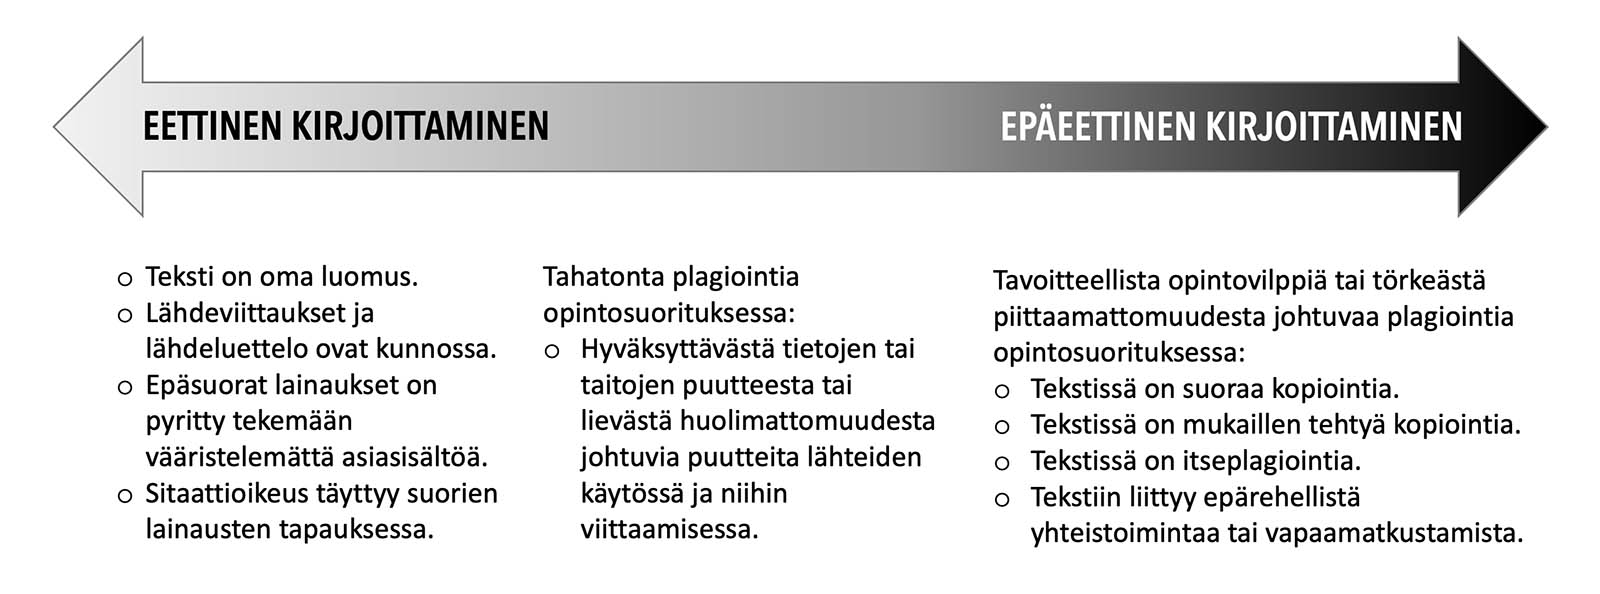 Eettisen ja epäeettisen kirjoittamisen välillä vallitsee siirtymäjatkumo. Kuva on mukaelma Kari Silpiön (2012, 75-77) luomasta kaaviosta.